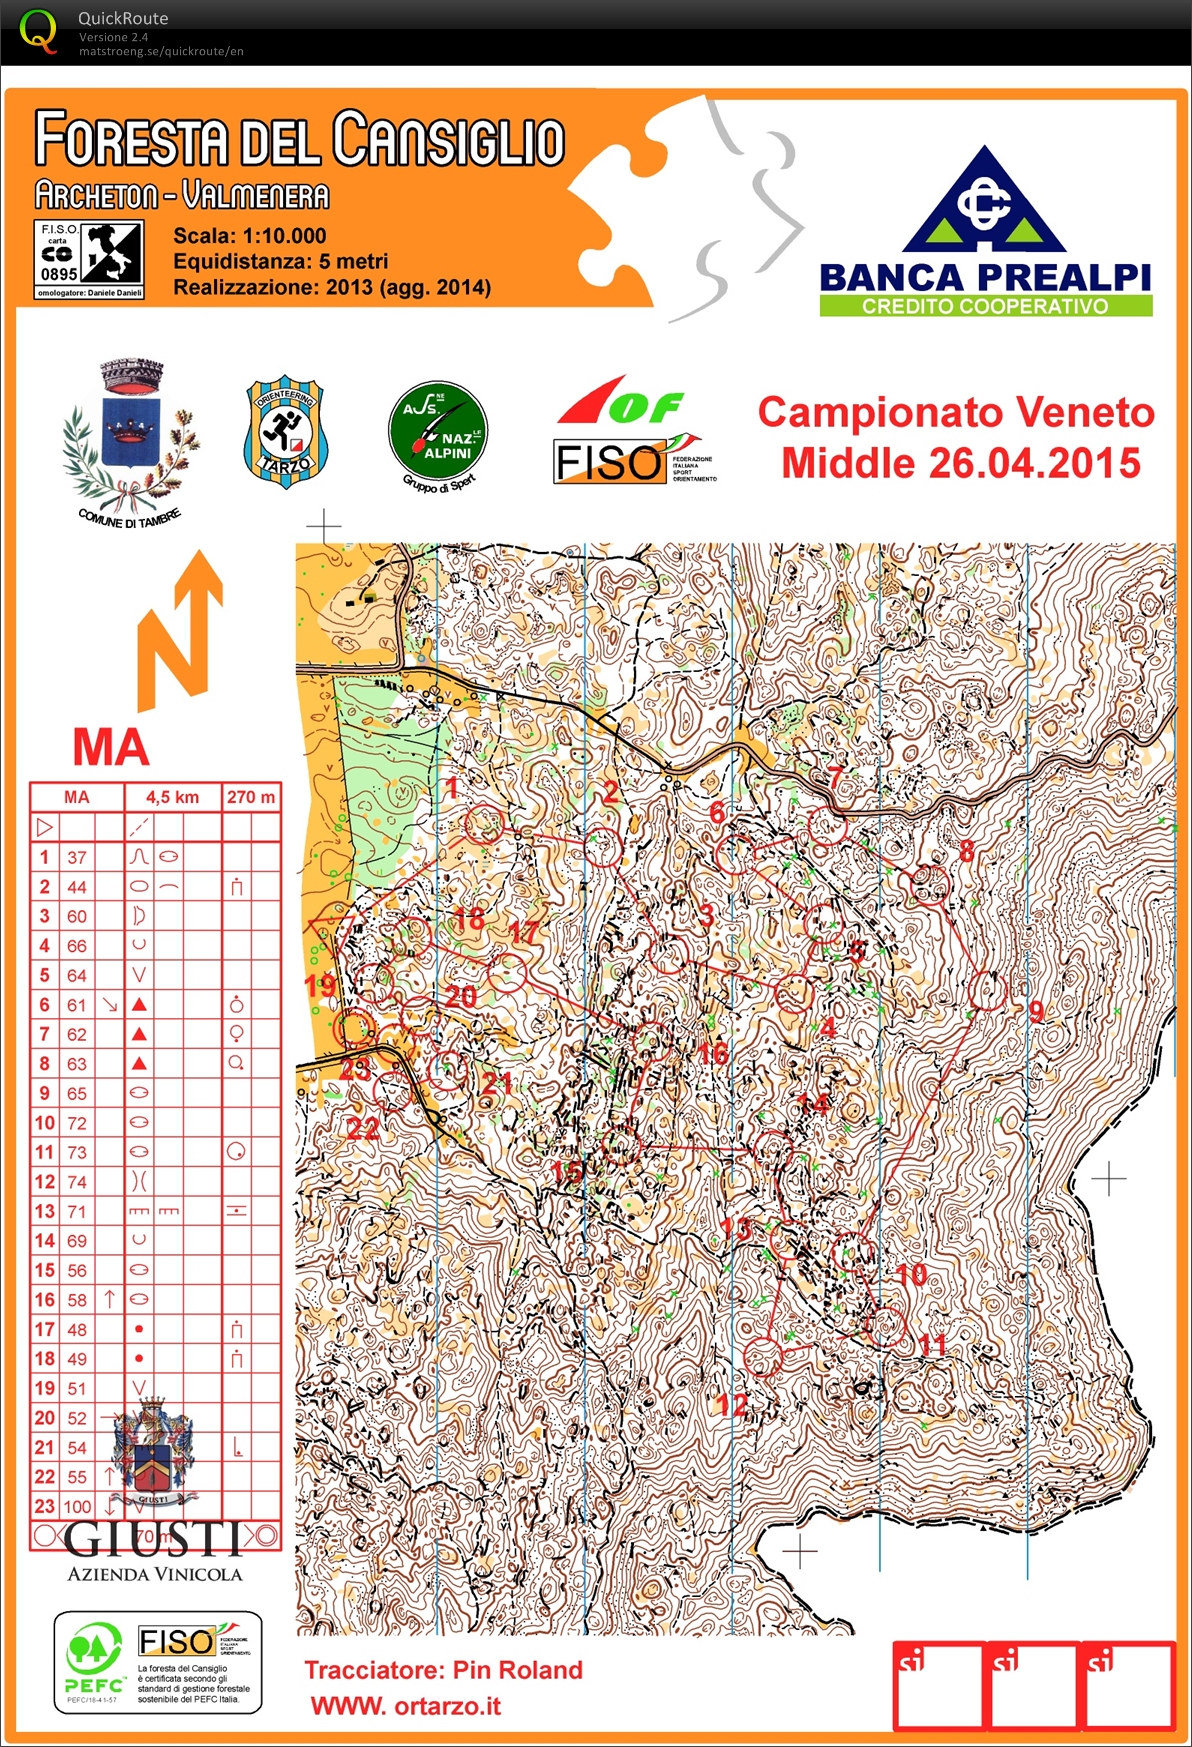 Campionato Veneto Middle 2015 (26-04-2015)